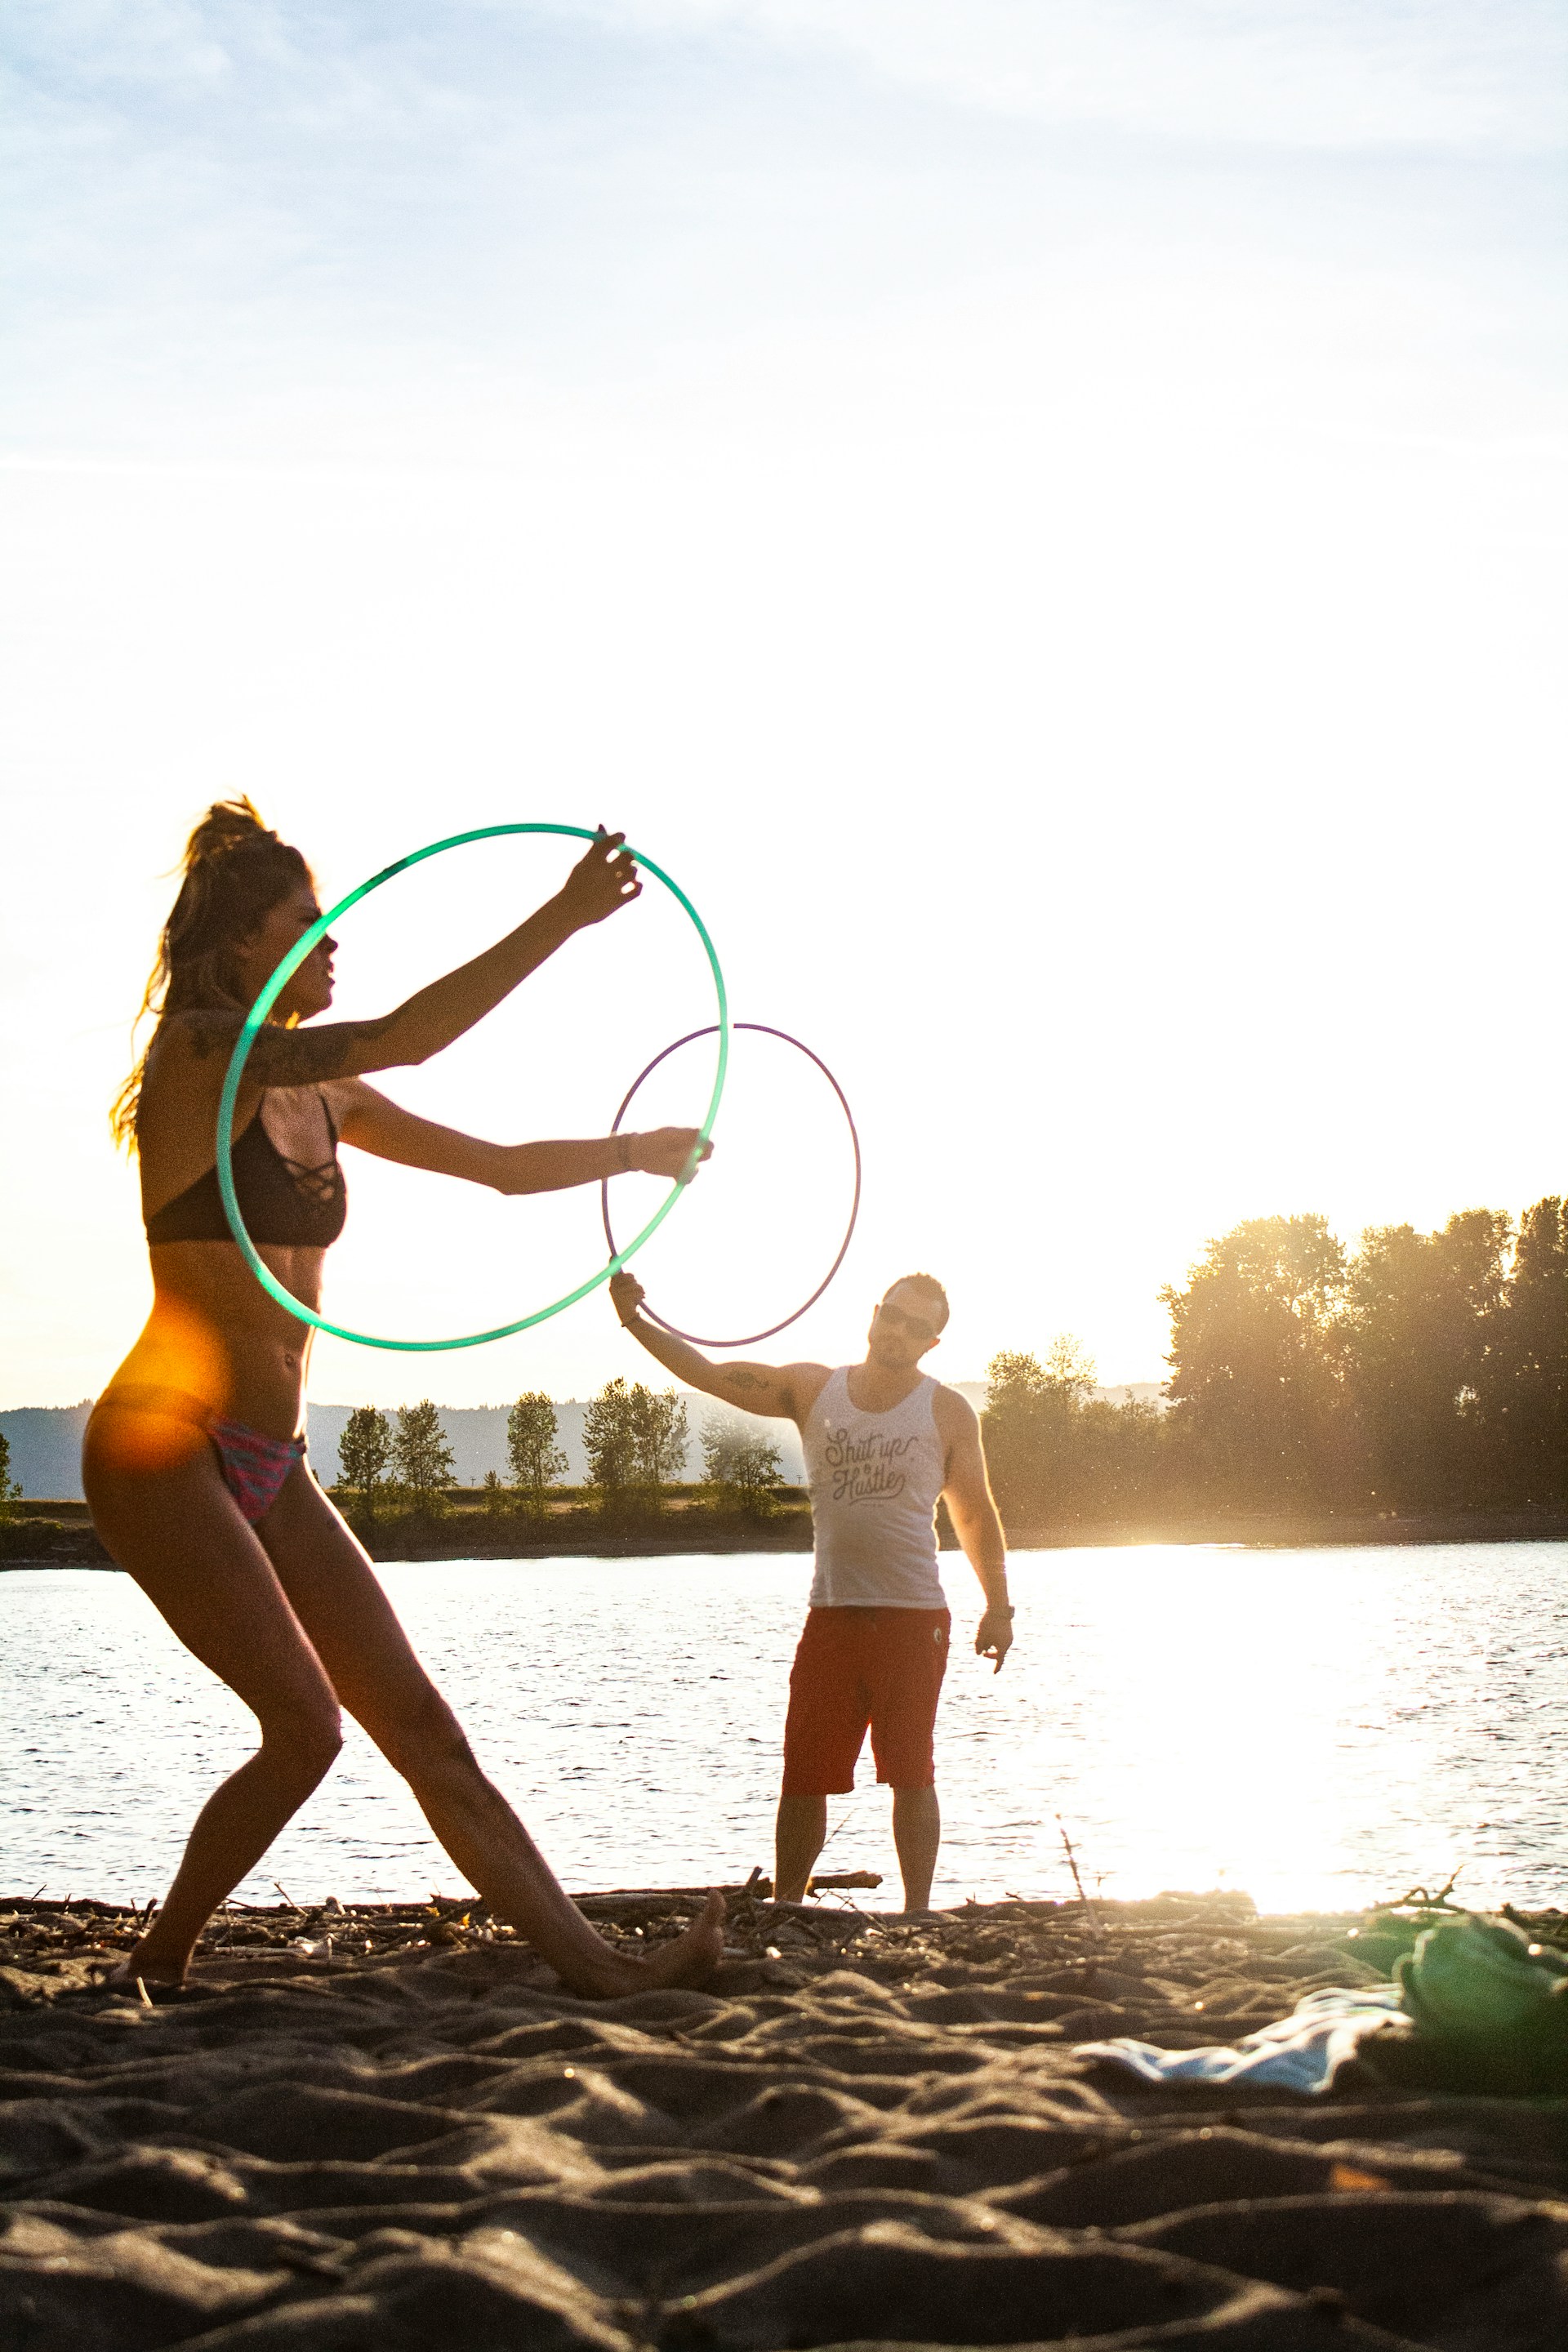 Τα σημαντικά οφέλη κάνοντας άσκηση με hula hoop για την υγεία σου, την απώλεια βάρους και το άγχος